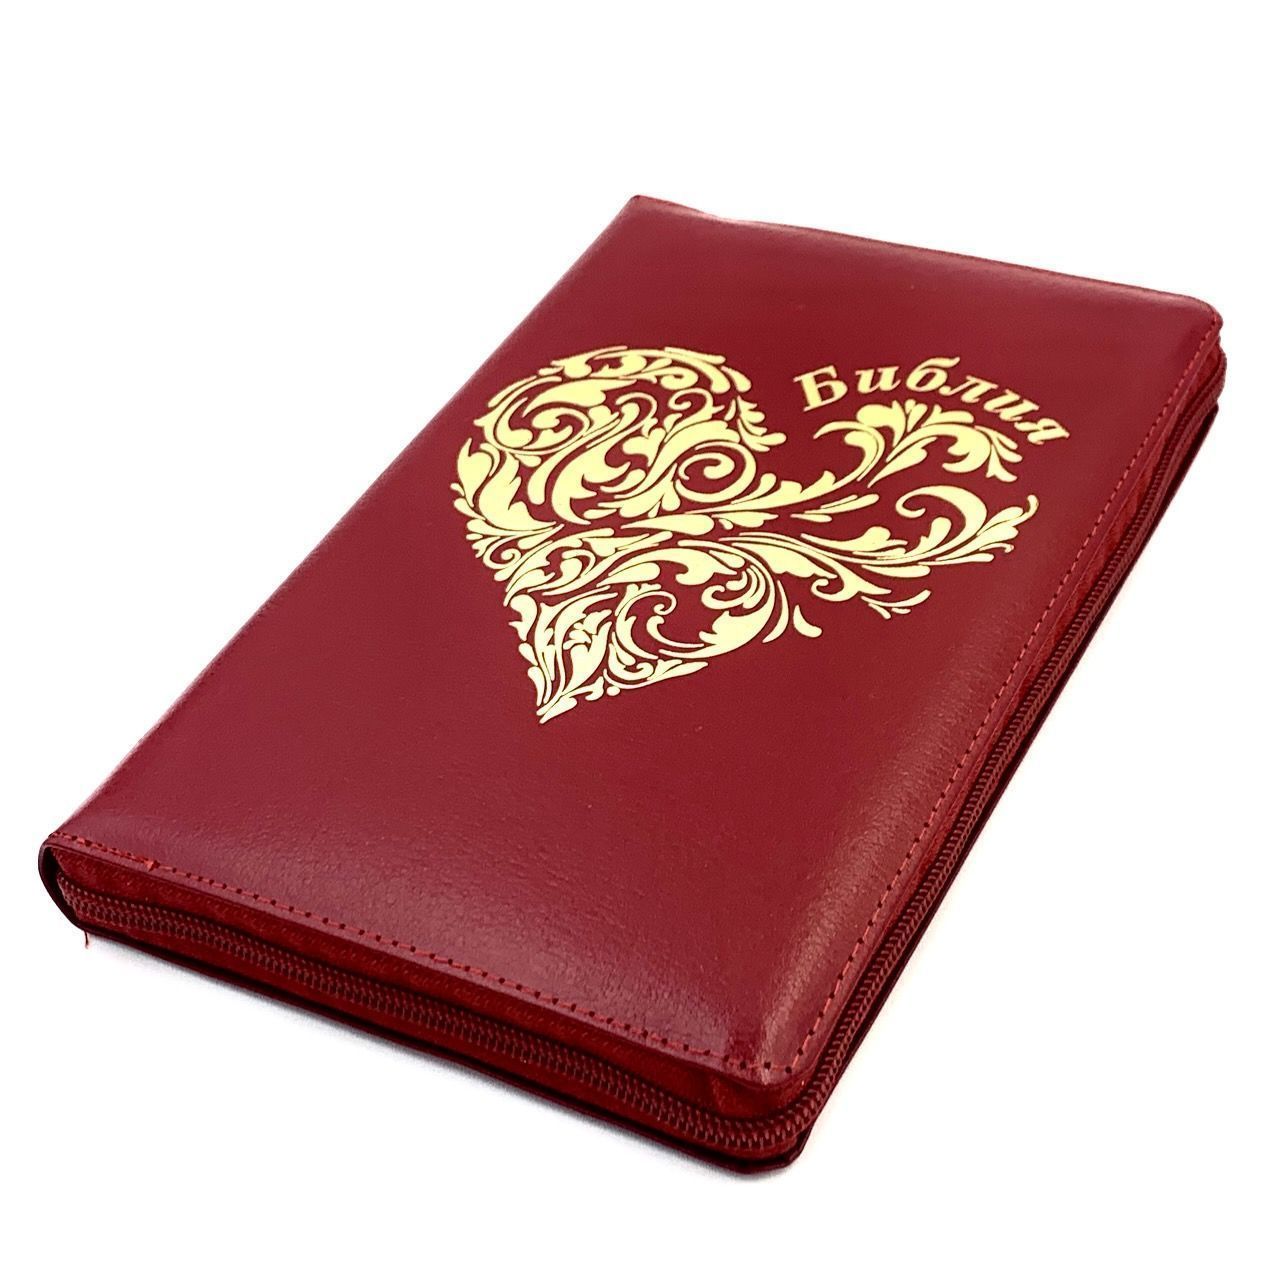 Библия 055zti код 23055-40 дизайн "золотое сердце", кожаный переплет на молнии с индексами, цвет красный, средний формат, 143*220 мм